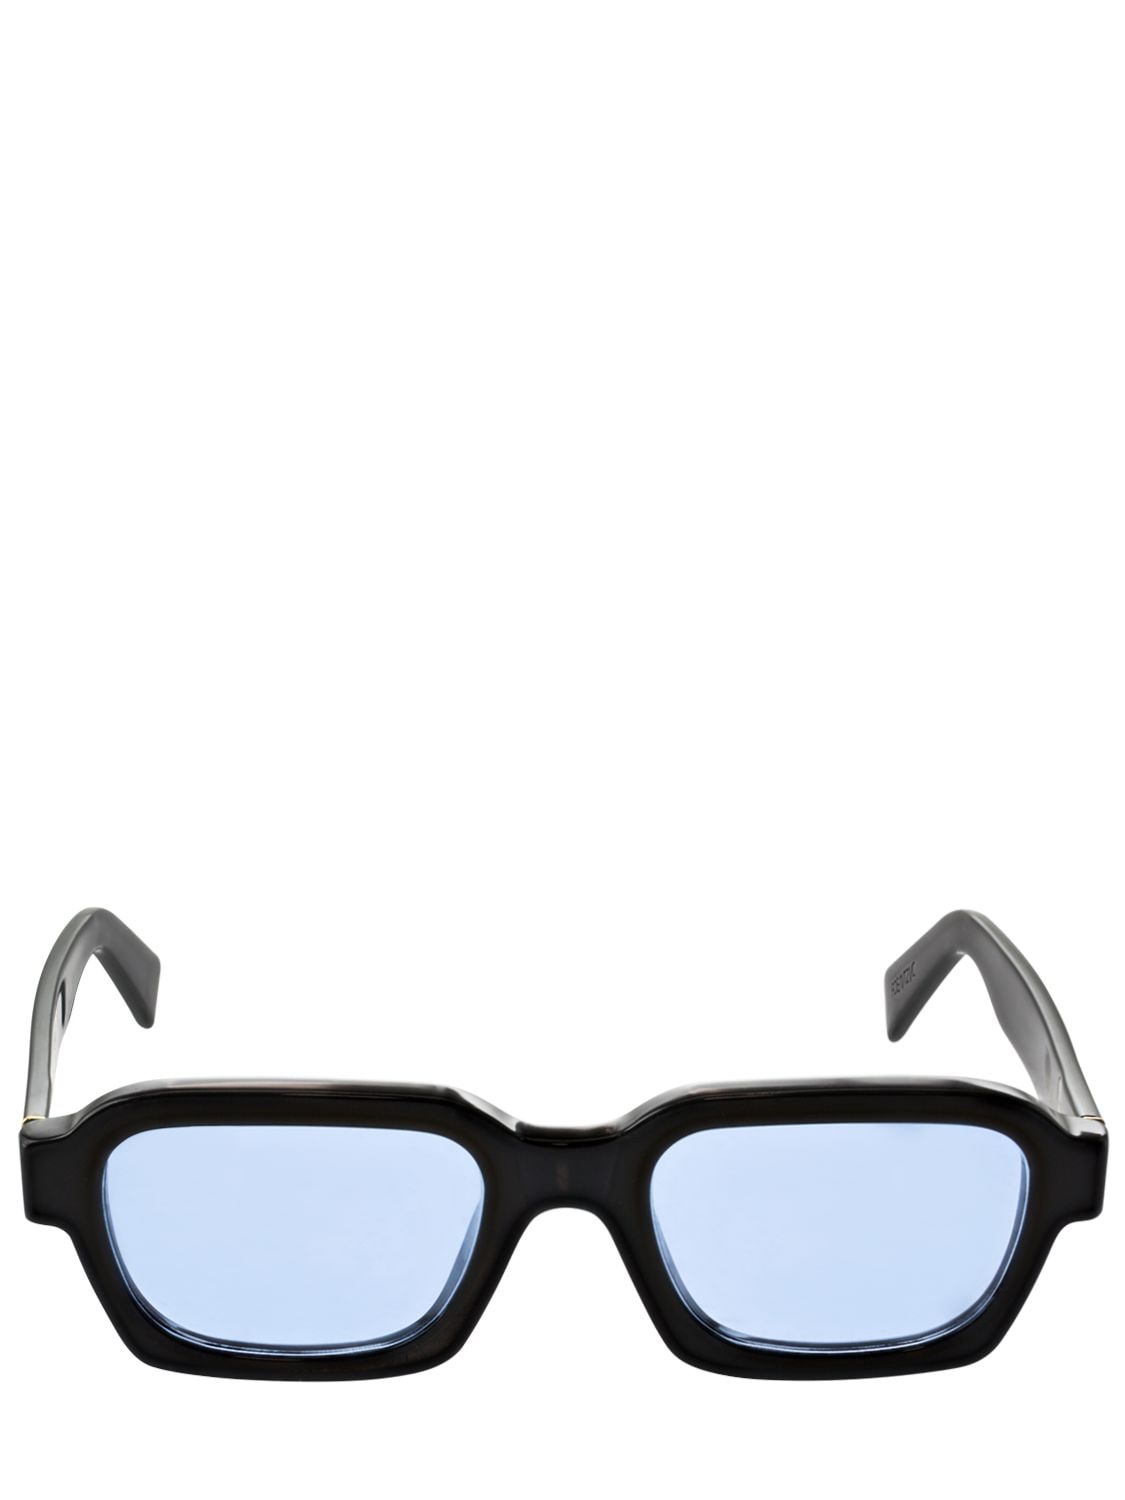 Image of Caro Azure Acetate Sunglasses